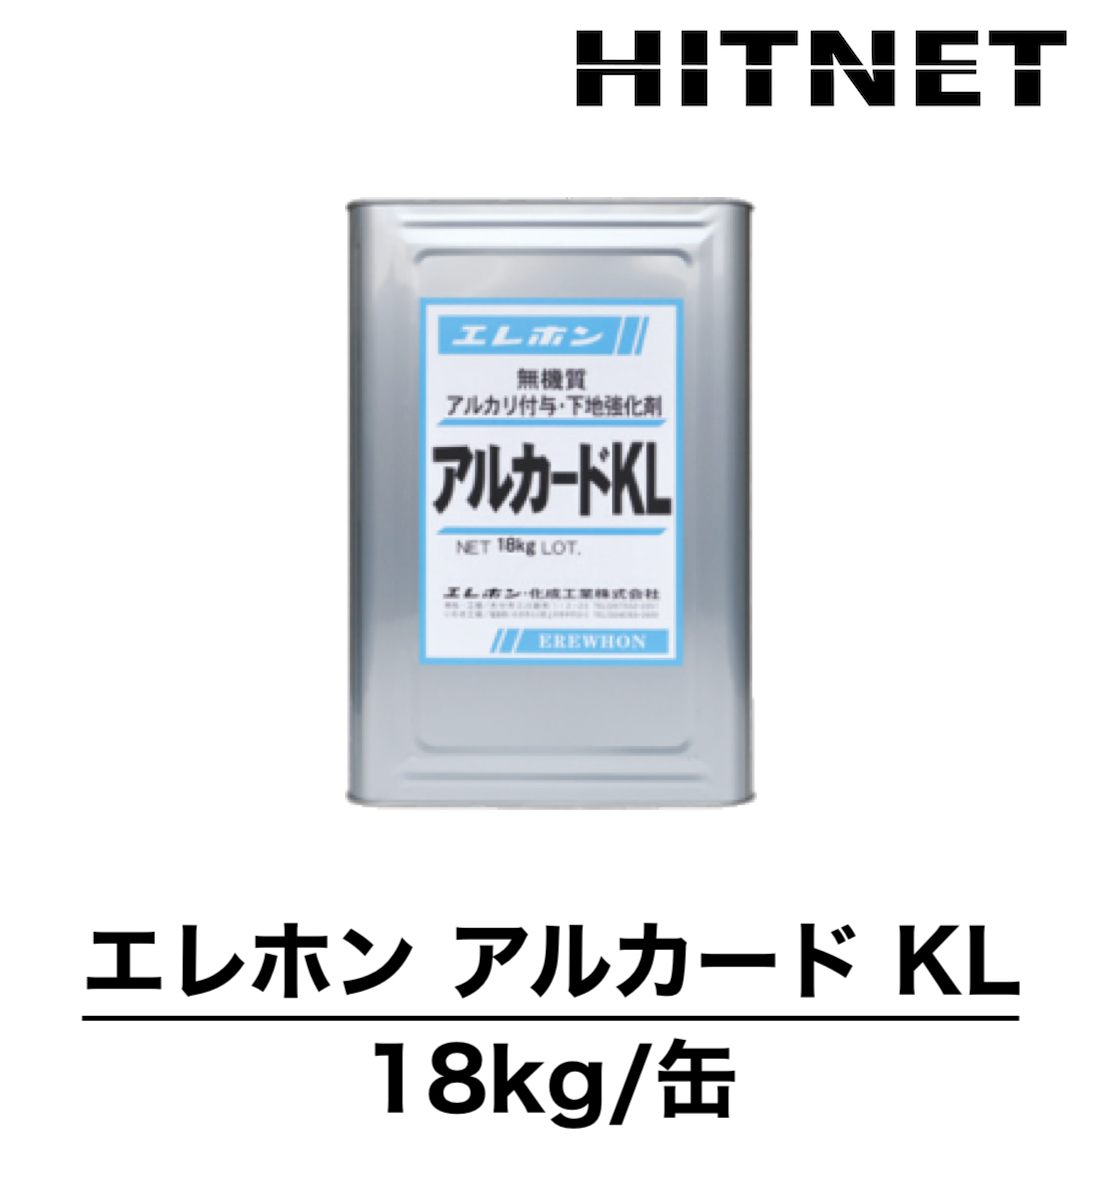 上品 エレホン アルカードKL 18kg/缶 珪酸リチウム アルカリ付与・下地